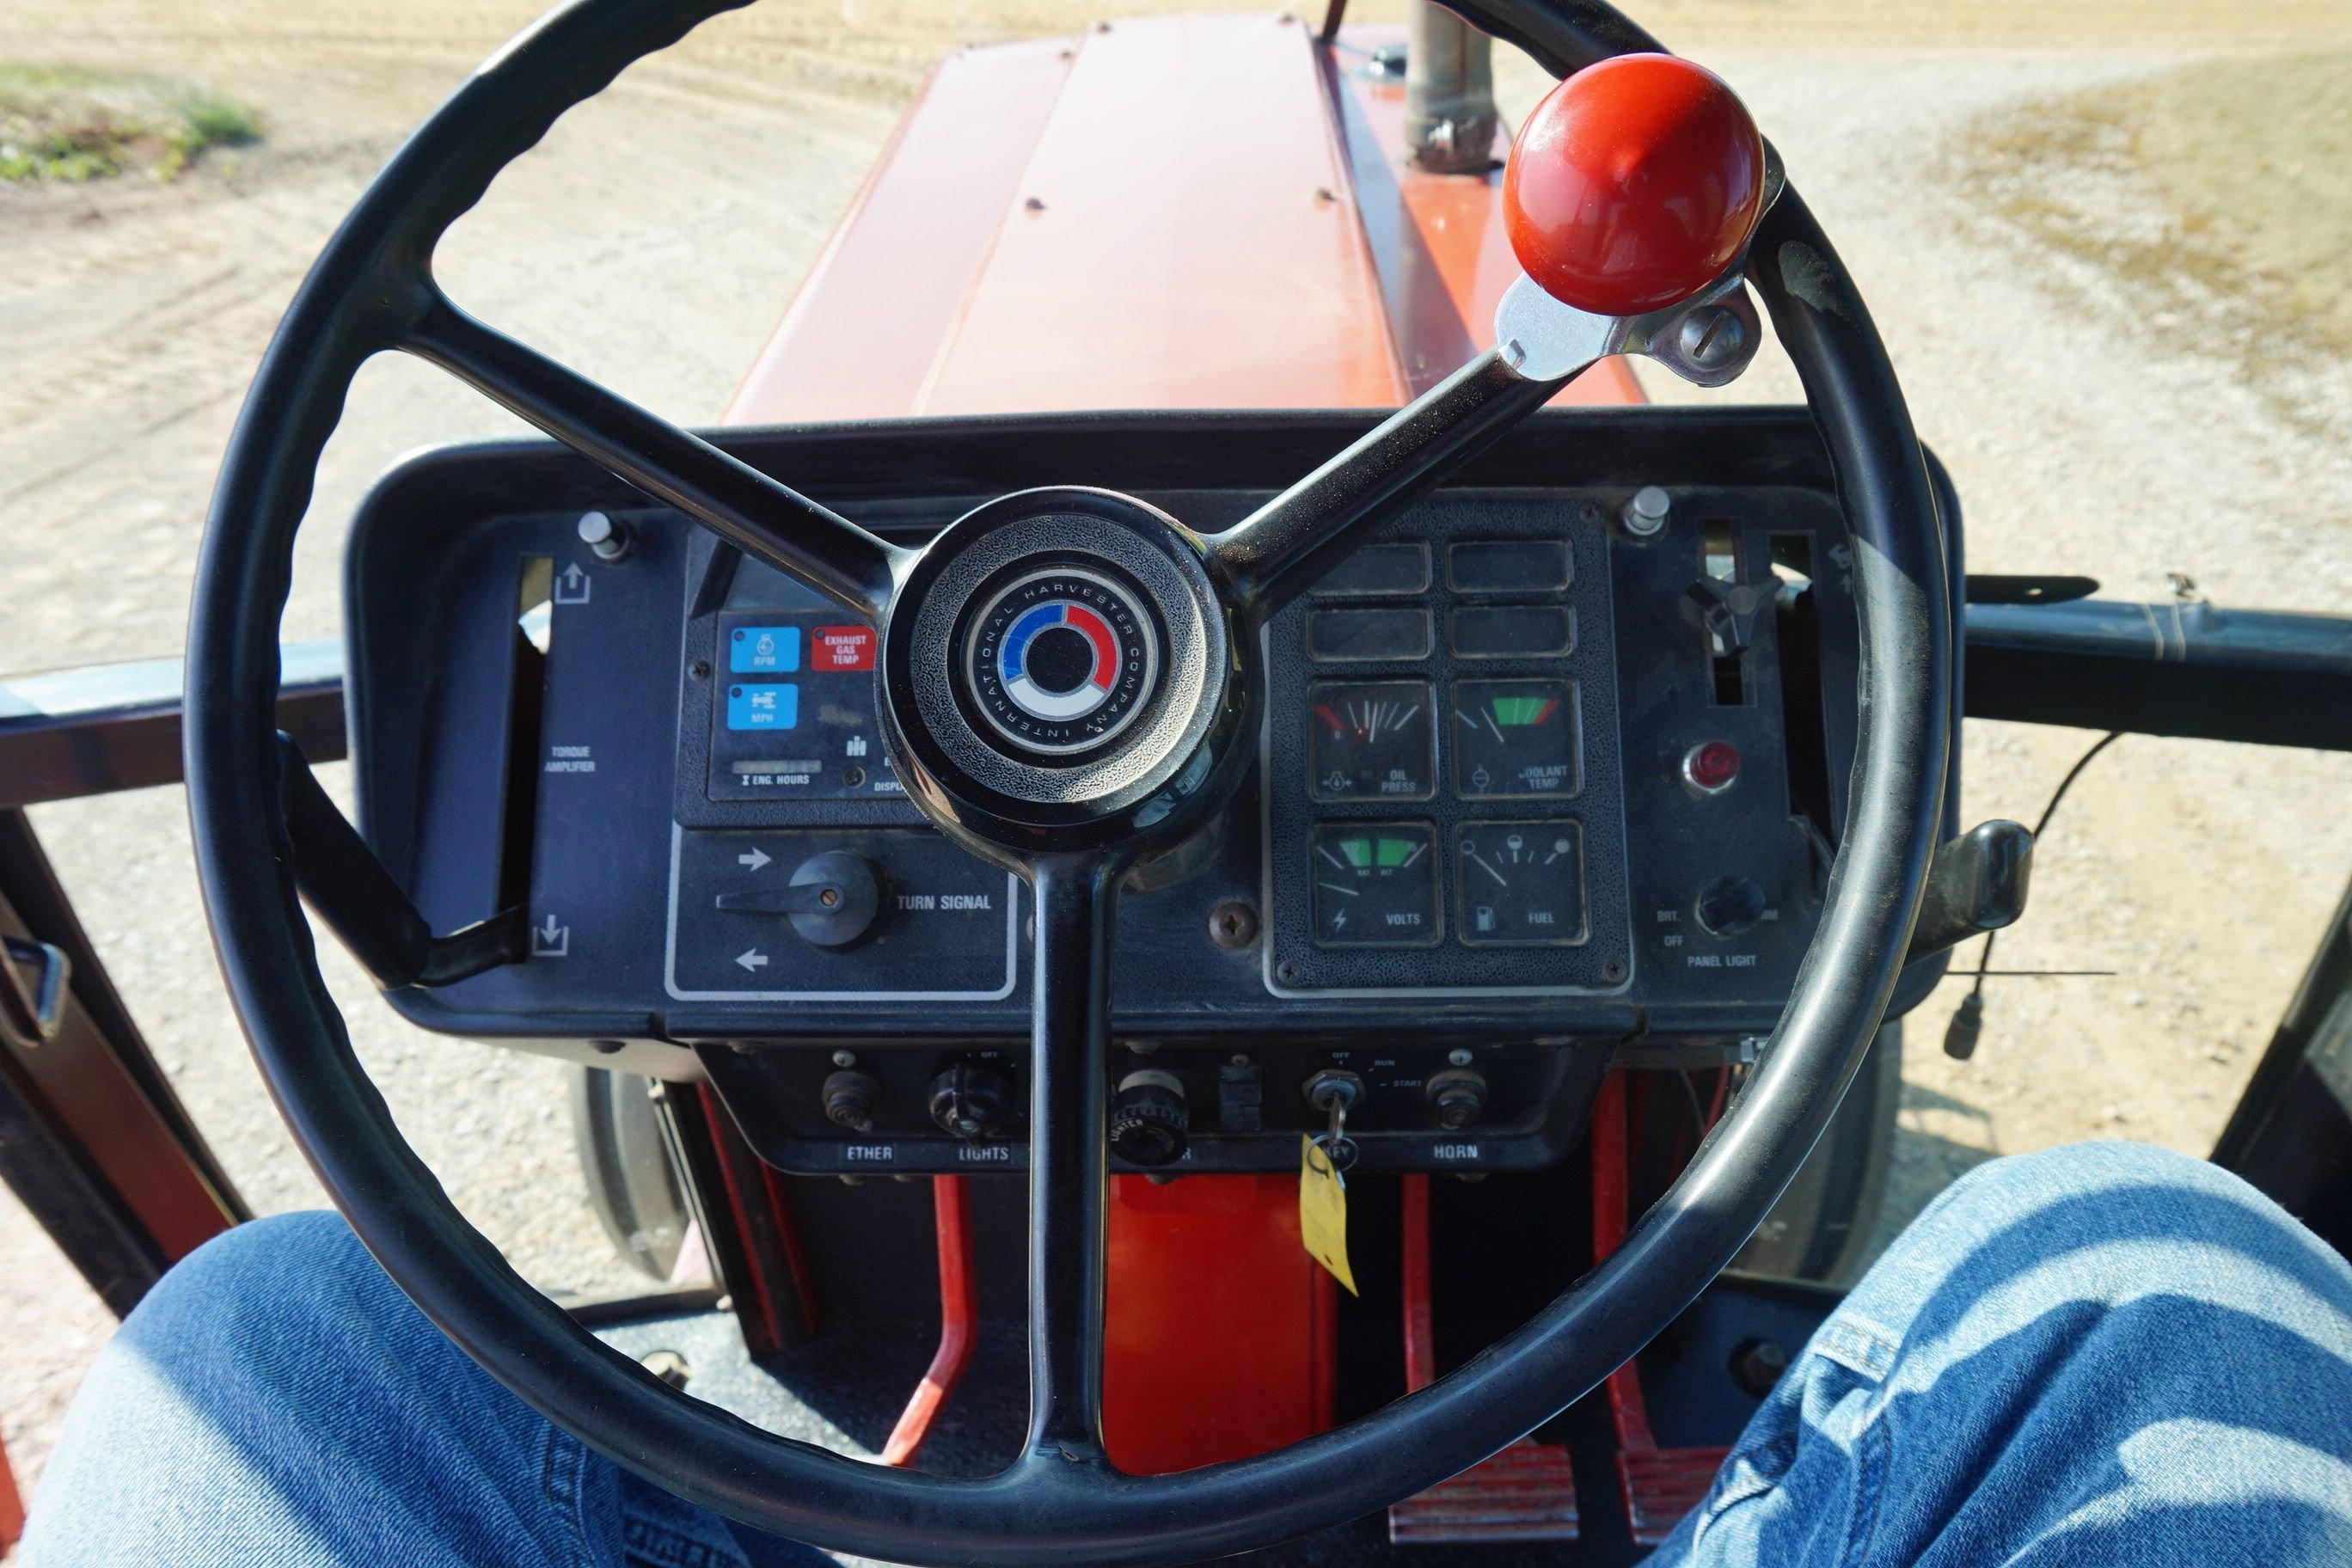 1979 International 1486 Farm Tractor